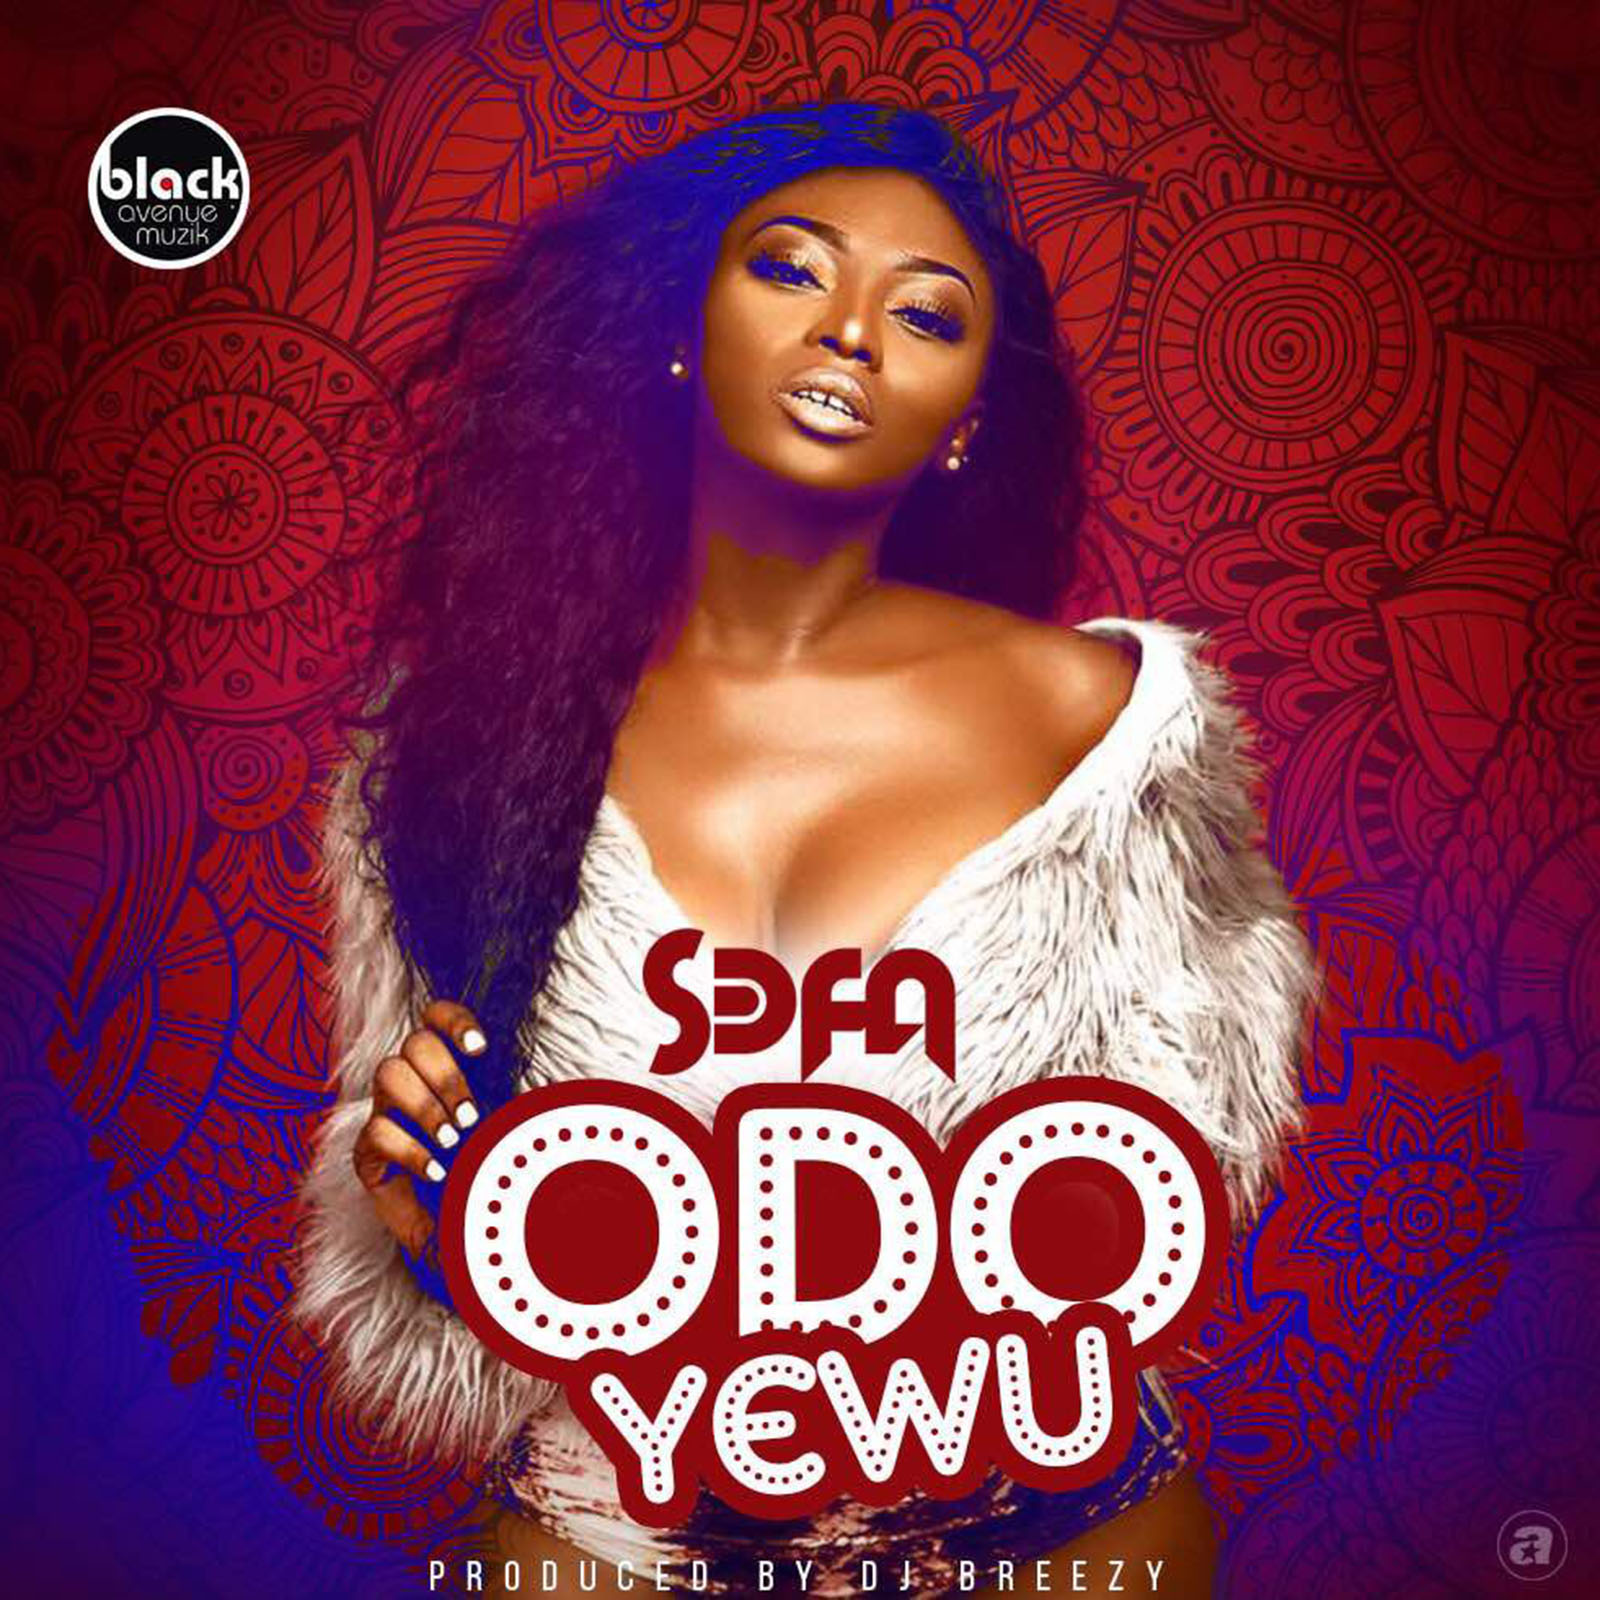 Odo Yewu by Sefa